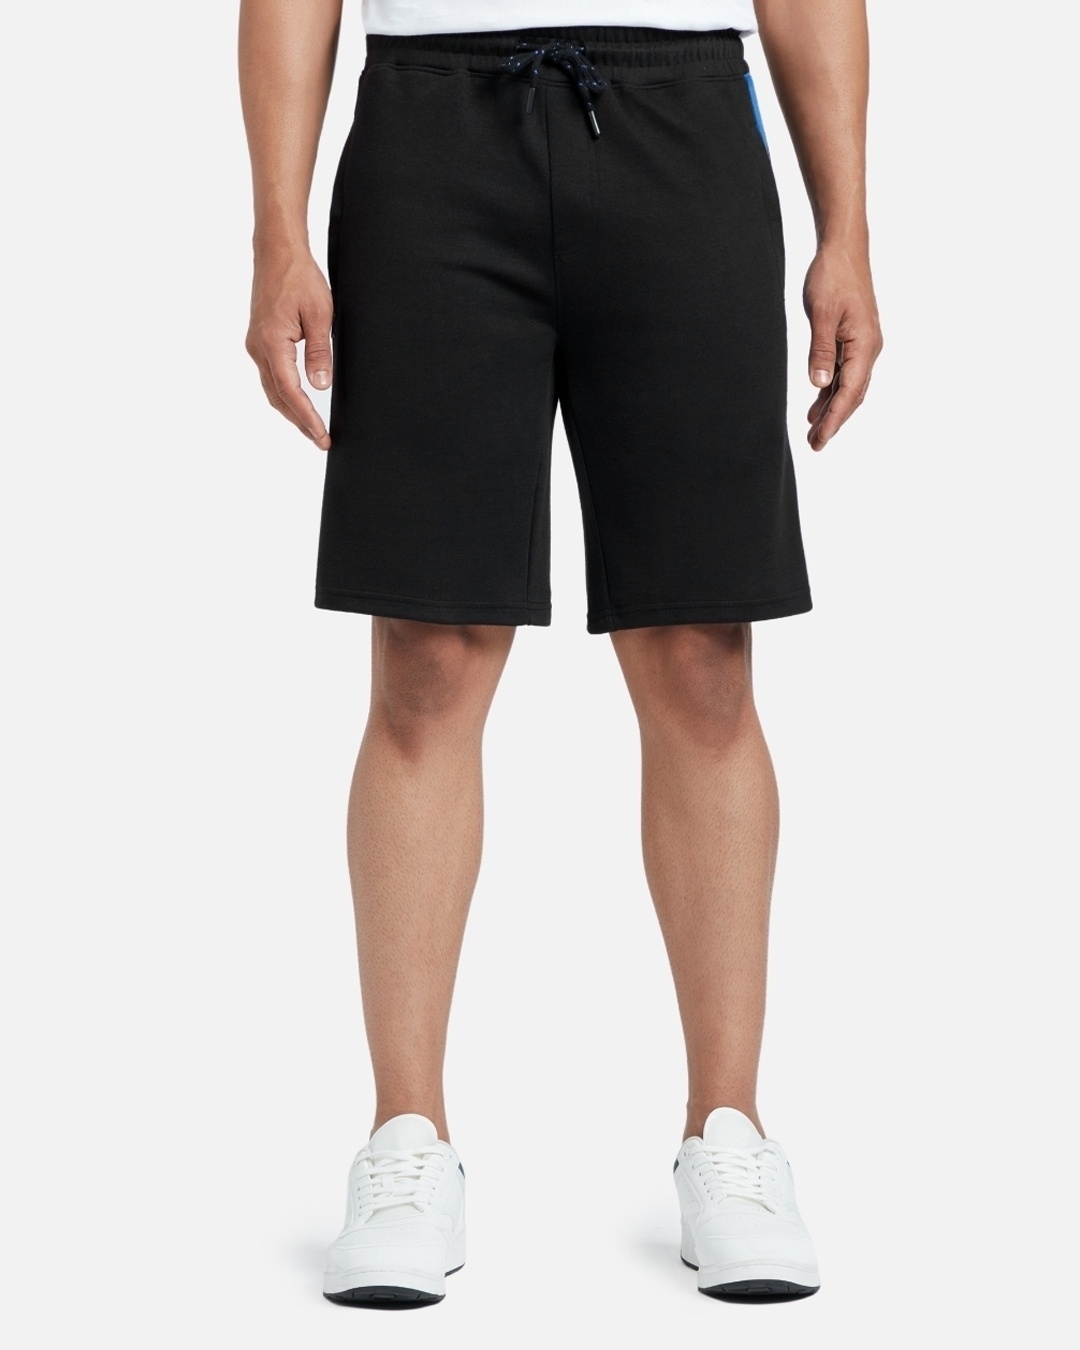 Shop Pack of 2 Men's Black & Grey Shorts-Back